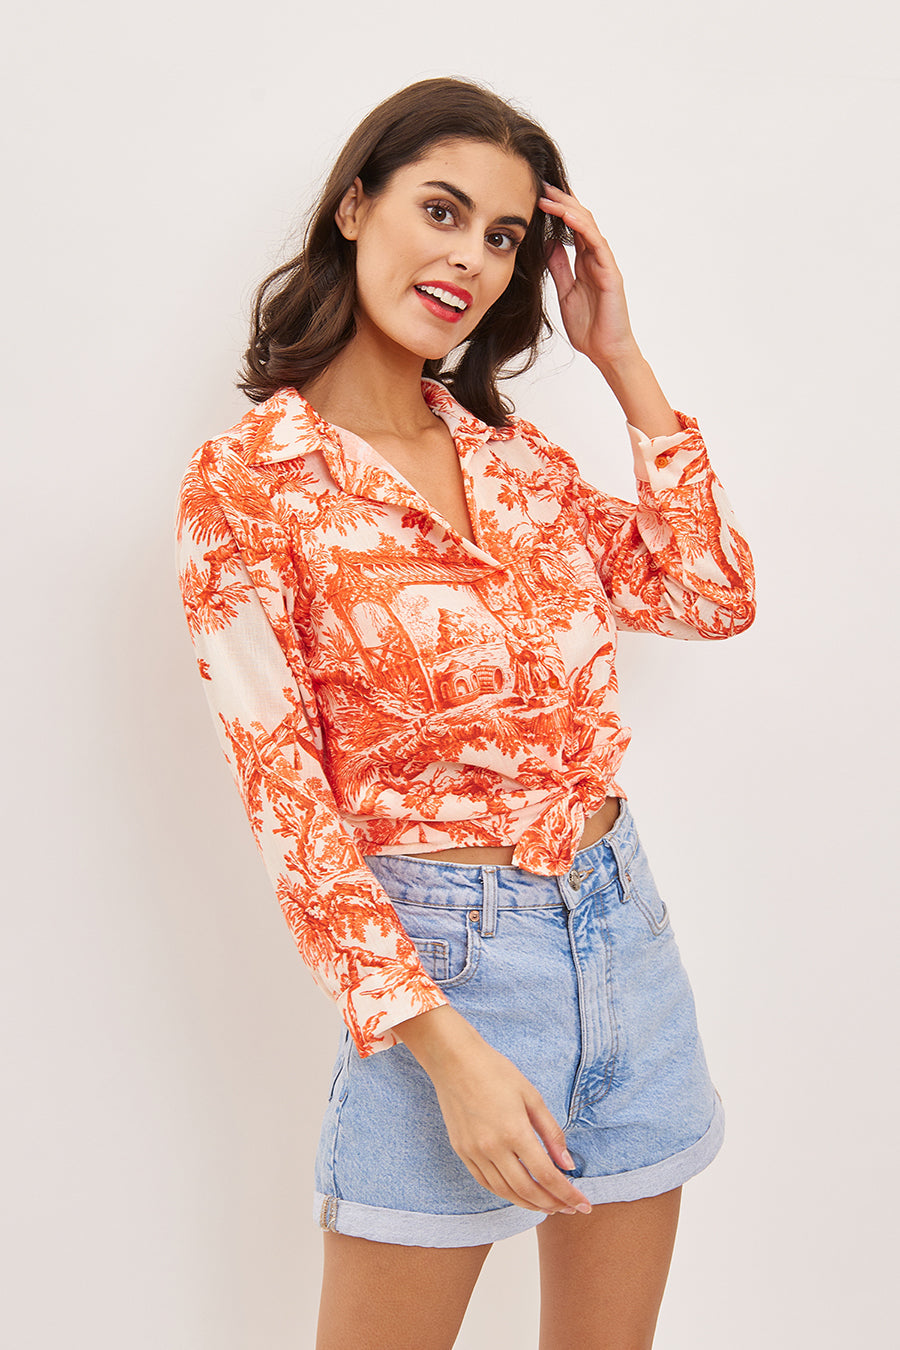 Γυναικείο πουκάμισο Jasmina, Πορτοκάλι 2